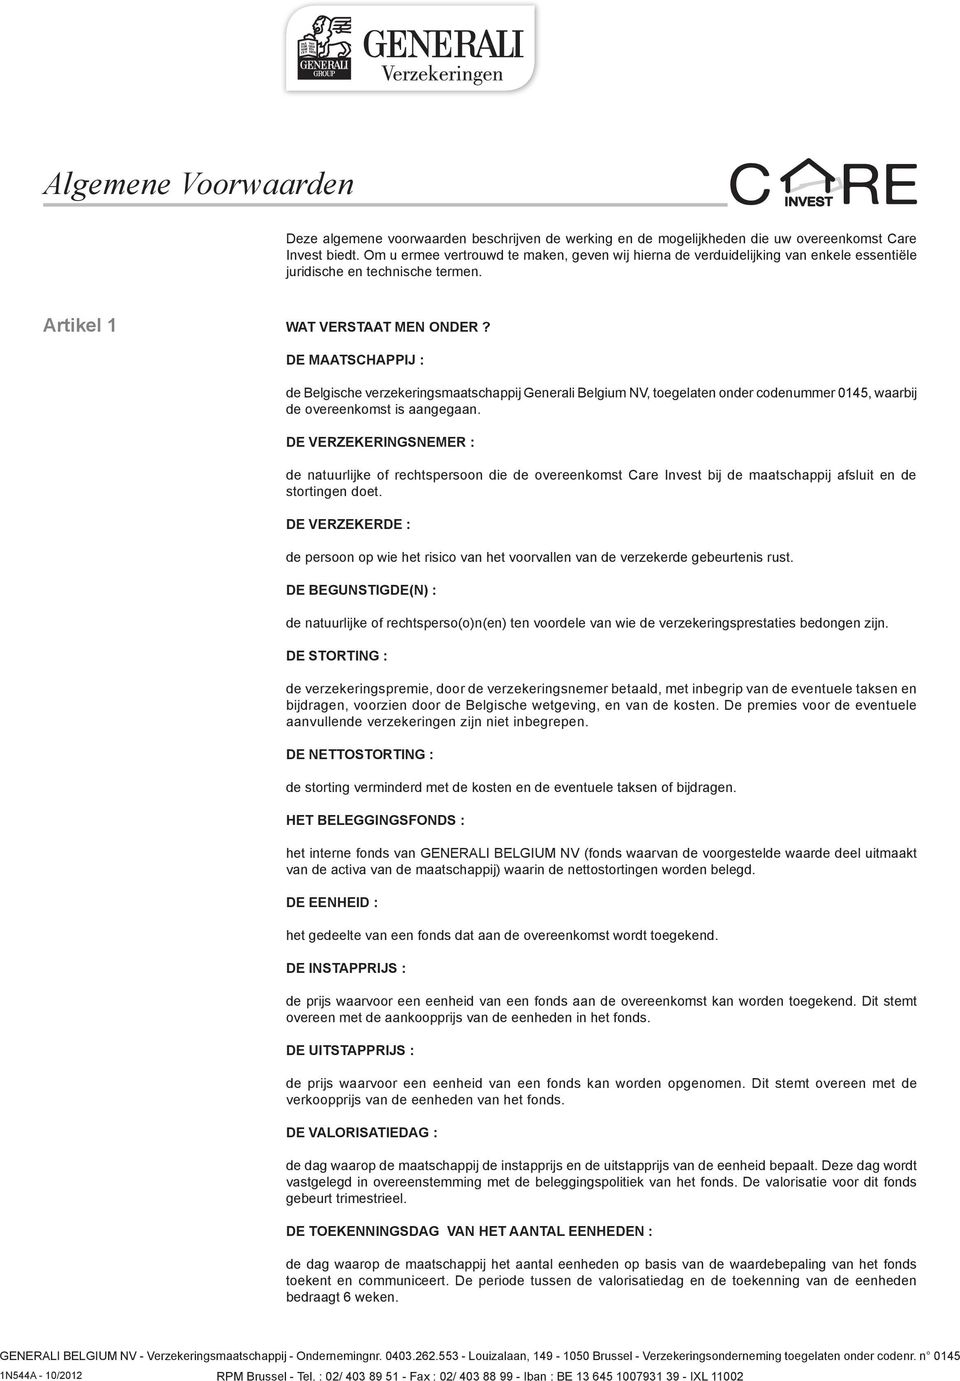 DE MAATSCHAPPIJ : de Belgische verzekeringsmaatschappij Generali Belgium NV, toegelaten onder codenummer 0145, waarbij de overeenkomst is aangegaan.